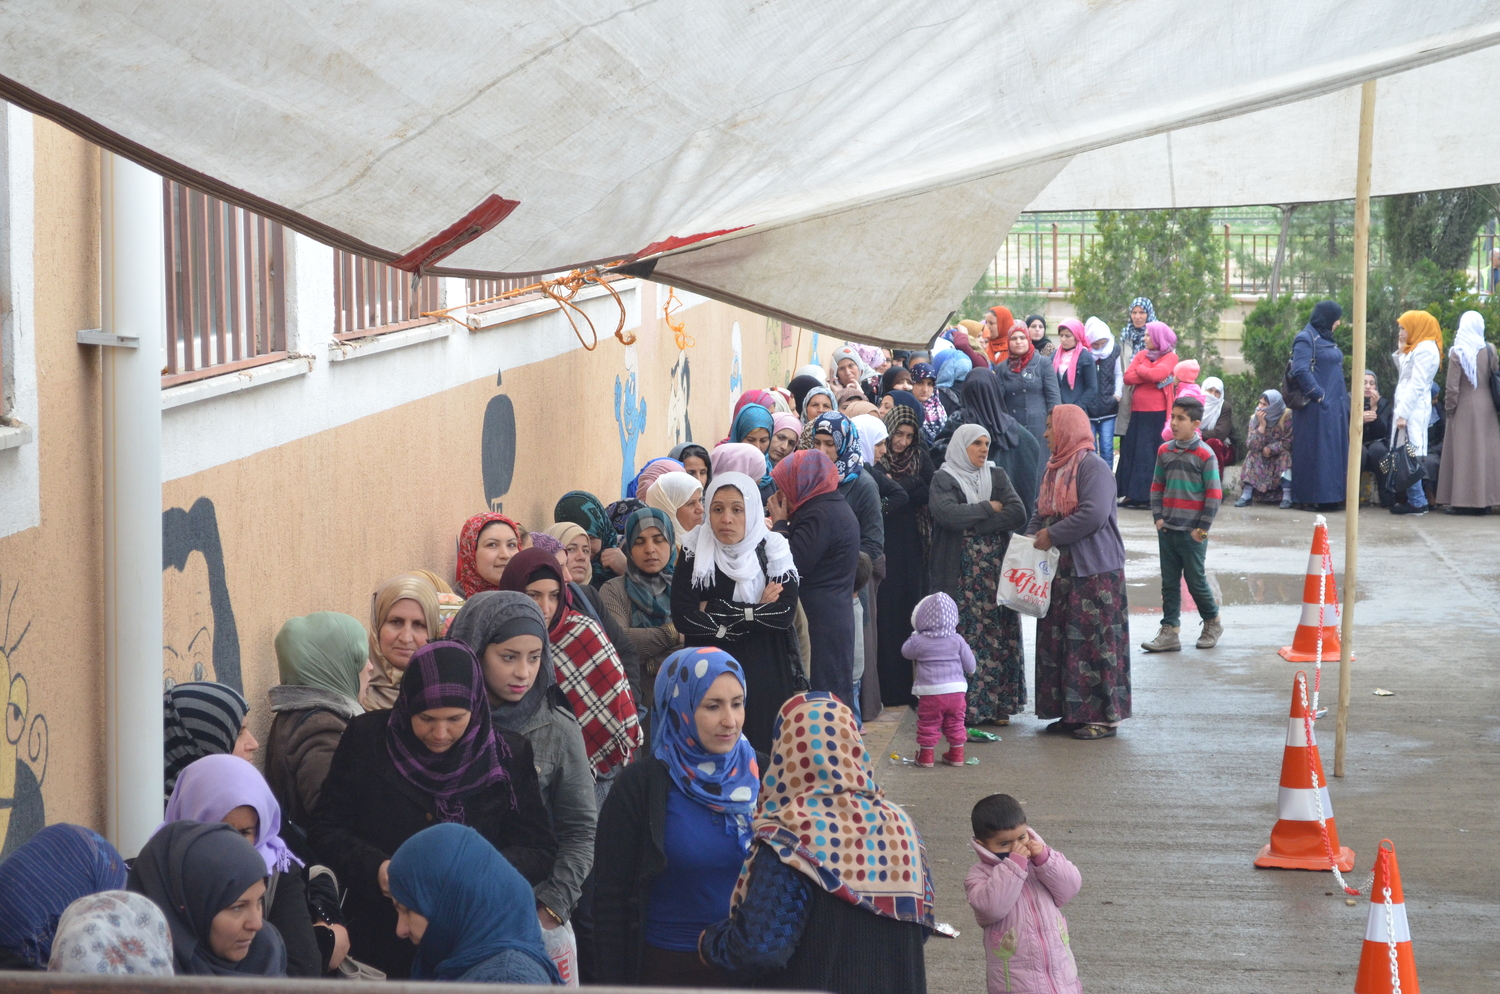 اللاجئون السوريون يشترطون حصول تغيير سياسي كشرط مسبق للعودة إلى سورية.